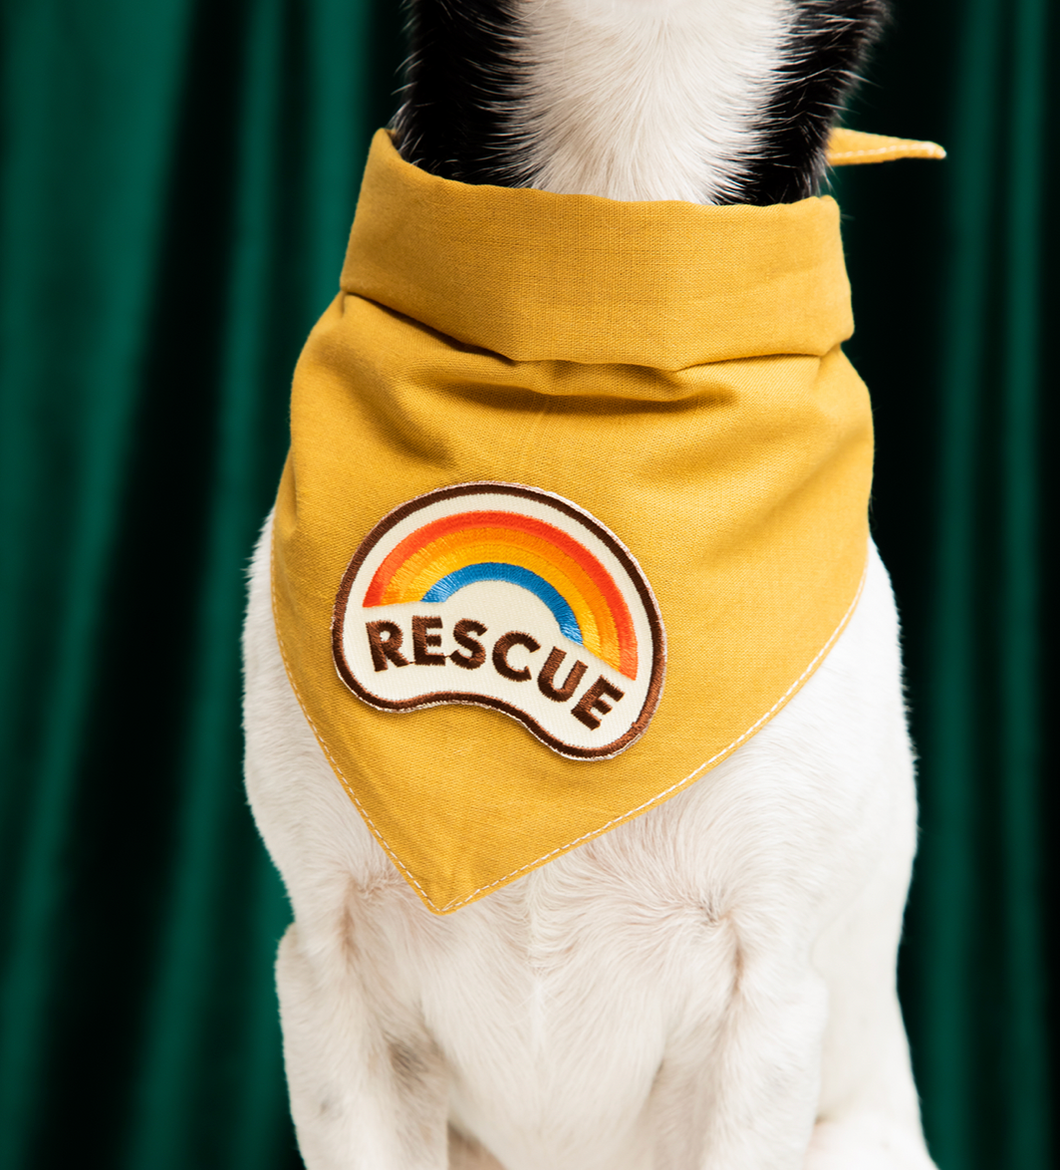 Rescue Badge